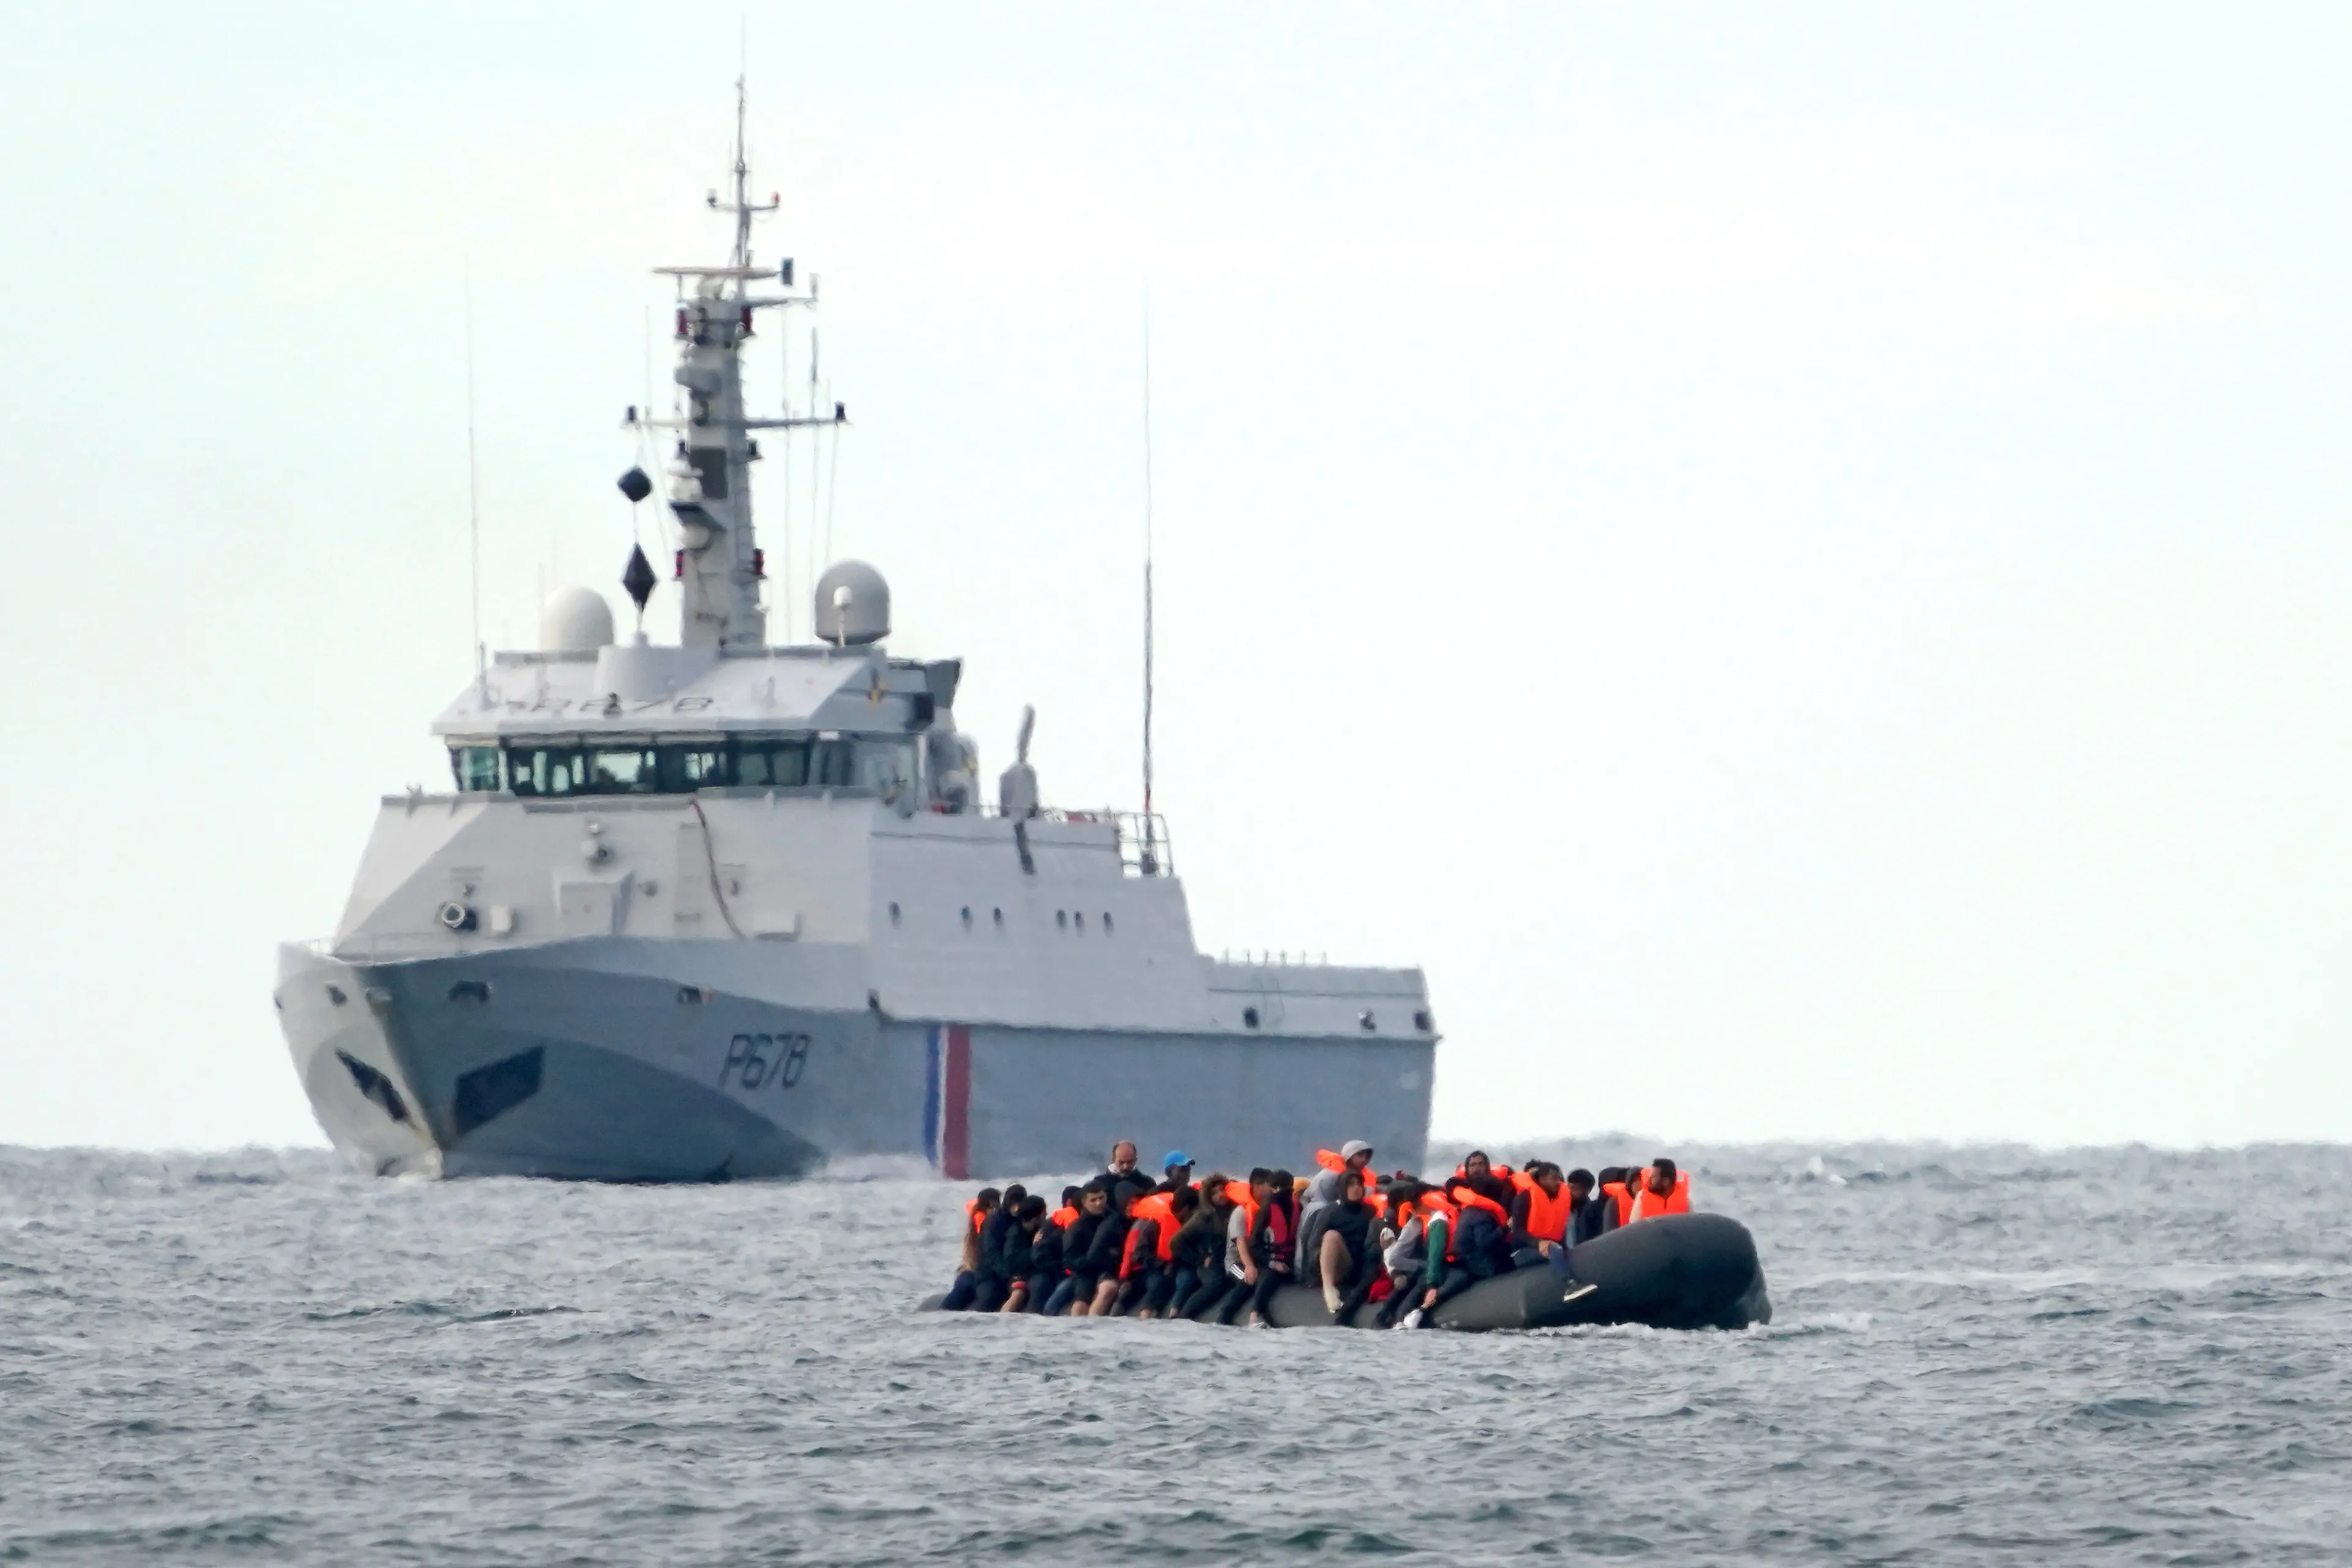 Migranten om het leven gekomen na poging Engeland bereiken met bootje